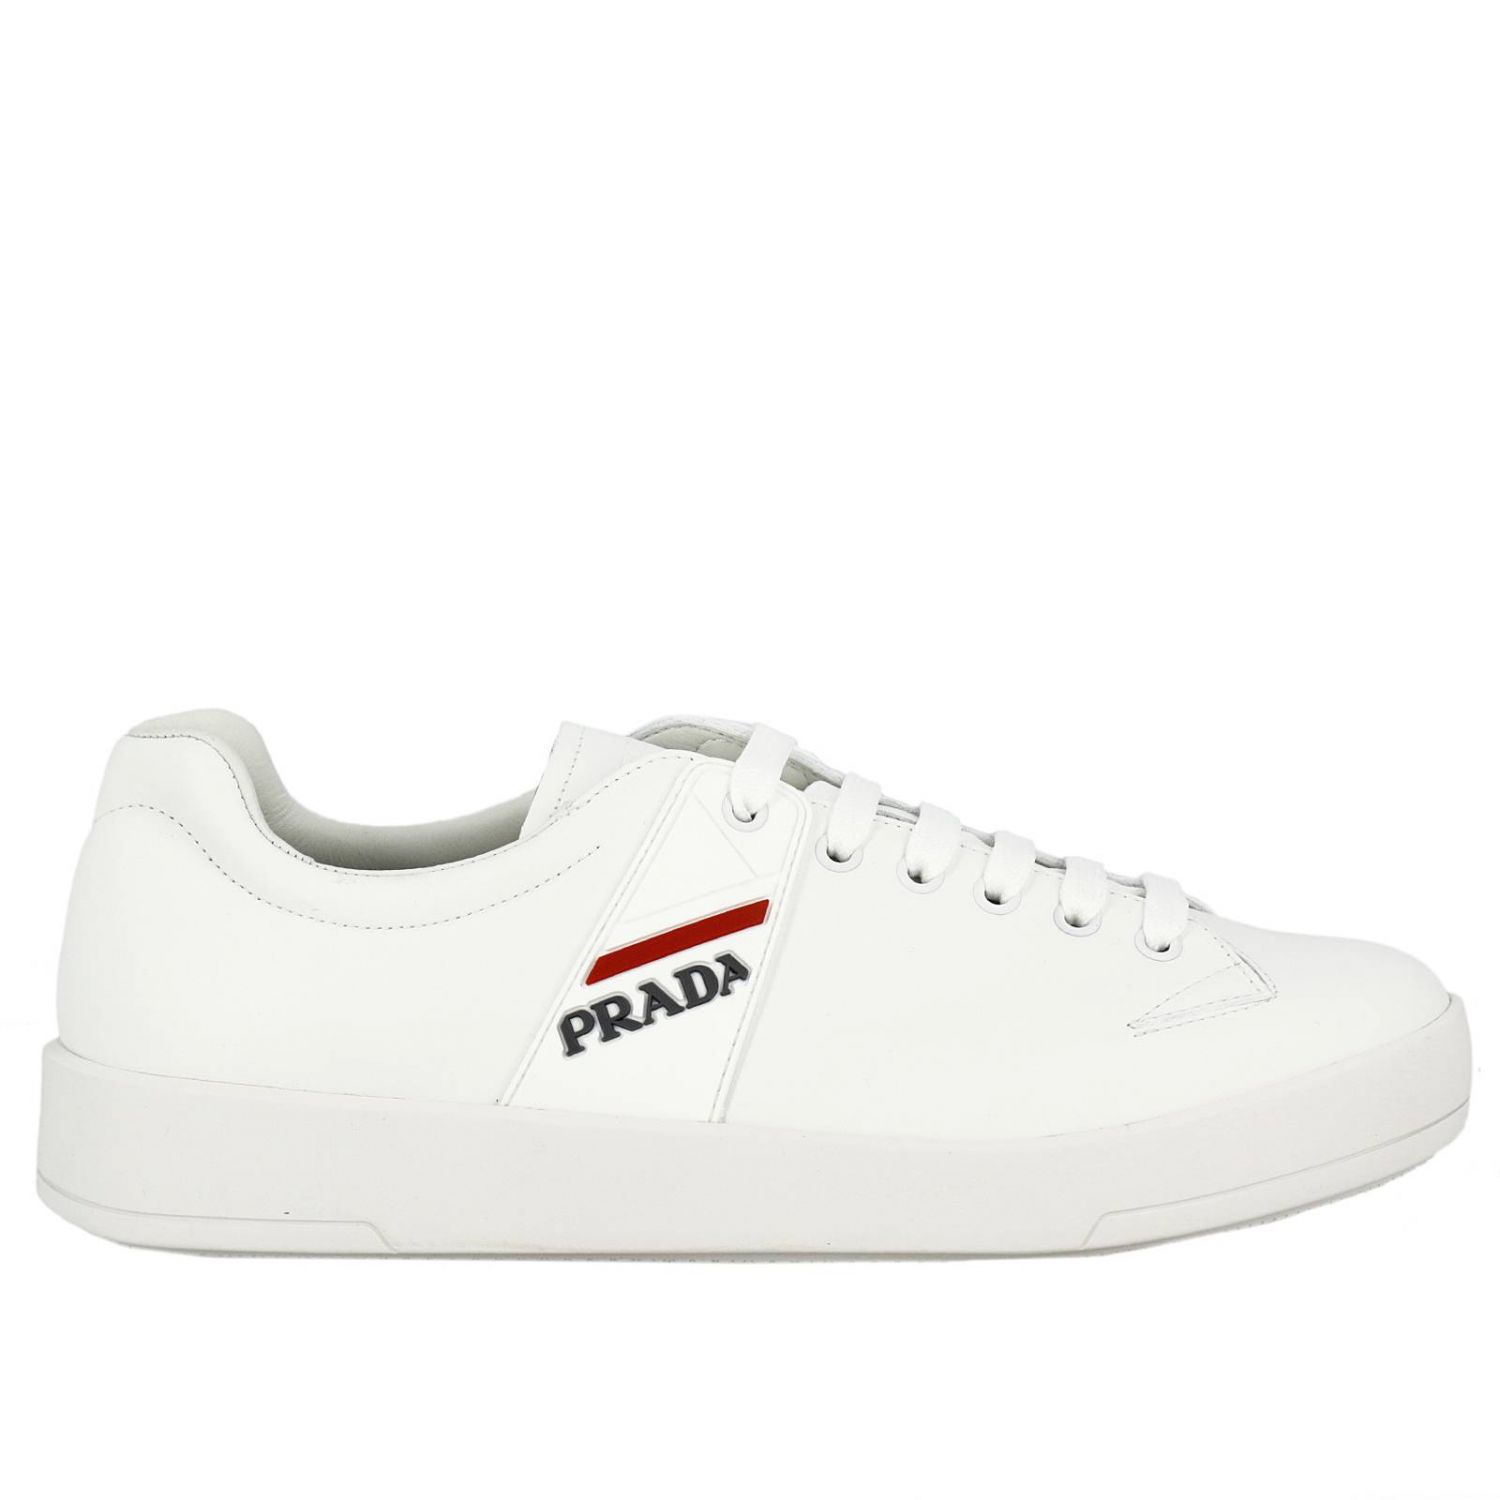 PRADA: Shoes men | Sneakers Prada Men White | Sneakers Prada 4E3197 6DT ...